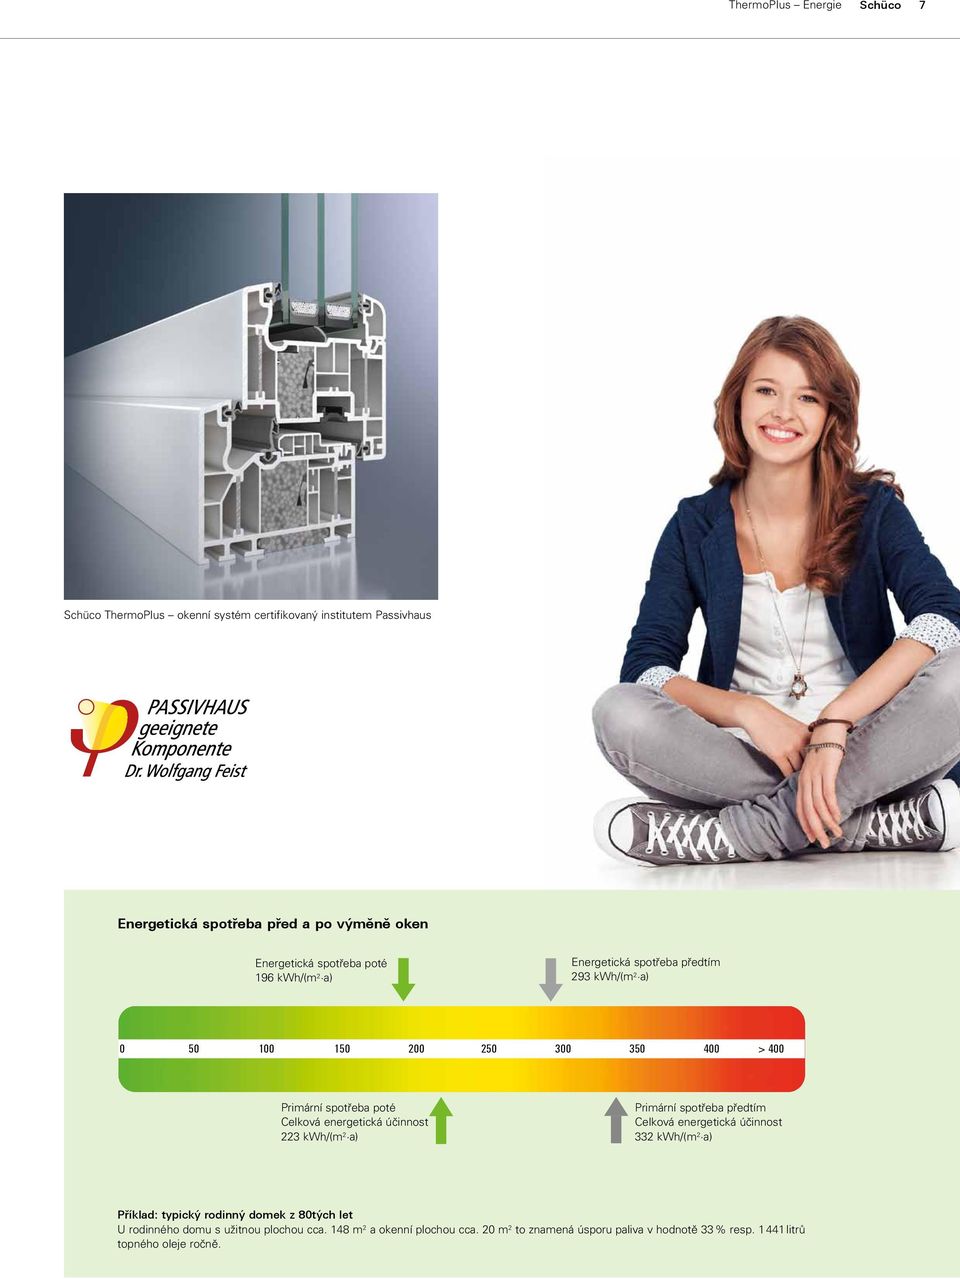 energetická účinnost 223 kwh/(m 2 a) Primární spotřeba předtím Celková energetická účinnost 332 kwh/(m 2 a) Příklad: typický rodinný domek z 80tých